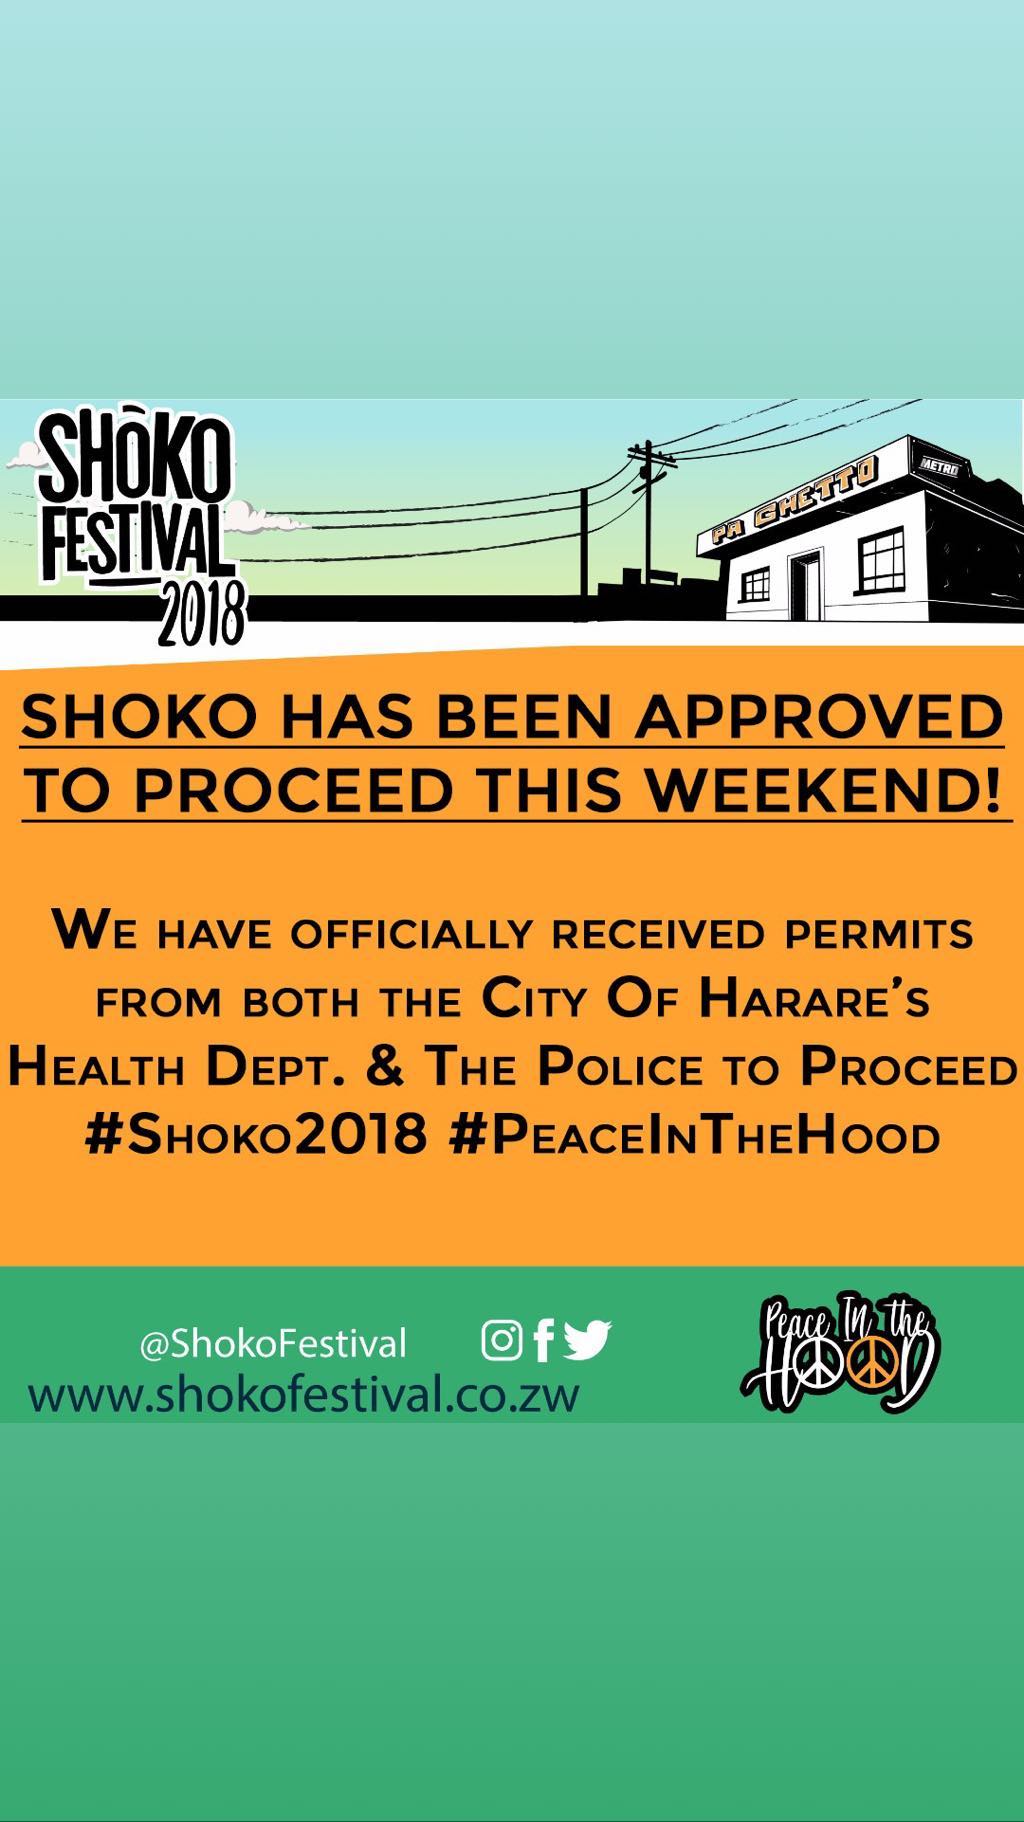 Shoko Festival 2018 and Zimbabwe Cholera Outbreak (IMG 1).jpg